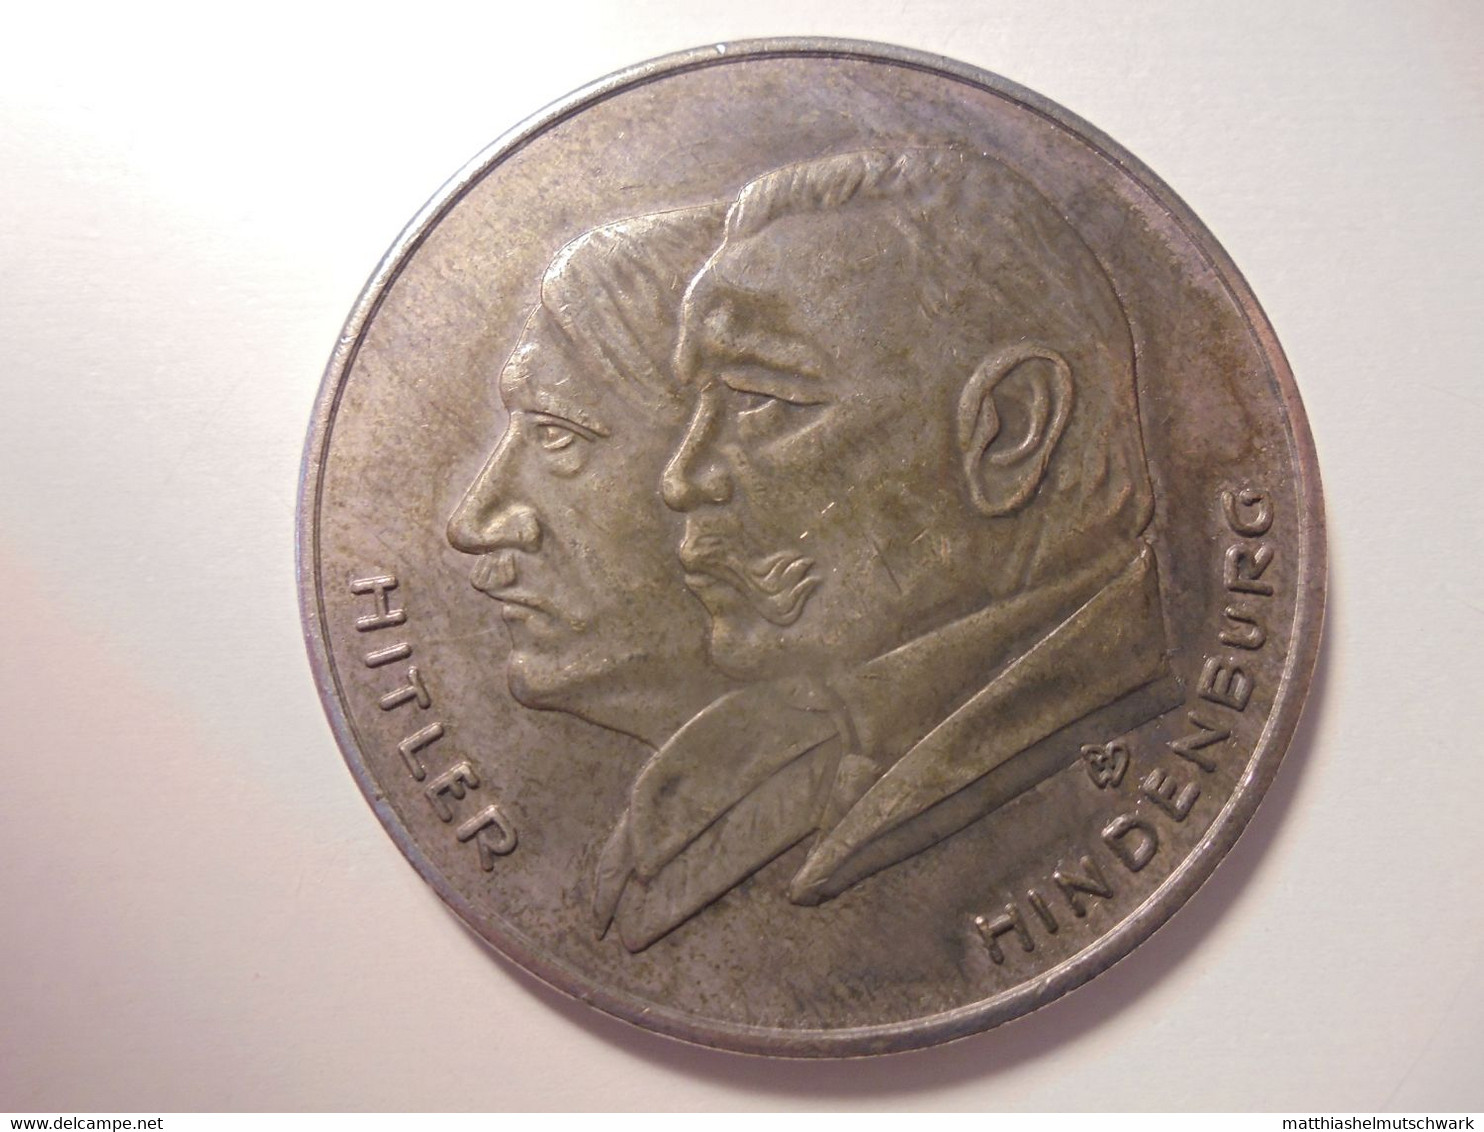 Medaille Auf „Deutschlands Erhebung 1933“ - Sehr Schöne Portraits Von Hitler Und Hindenburg Graveur/Designer: RW Medaill - Deutsches Reich